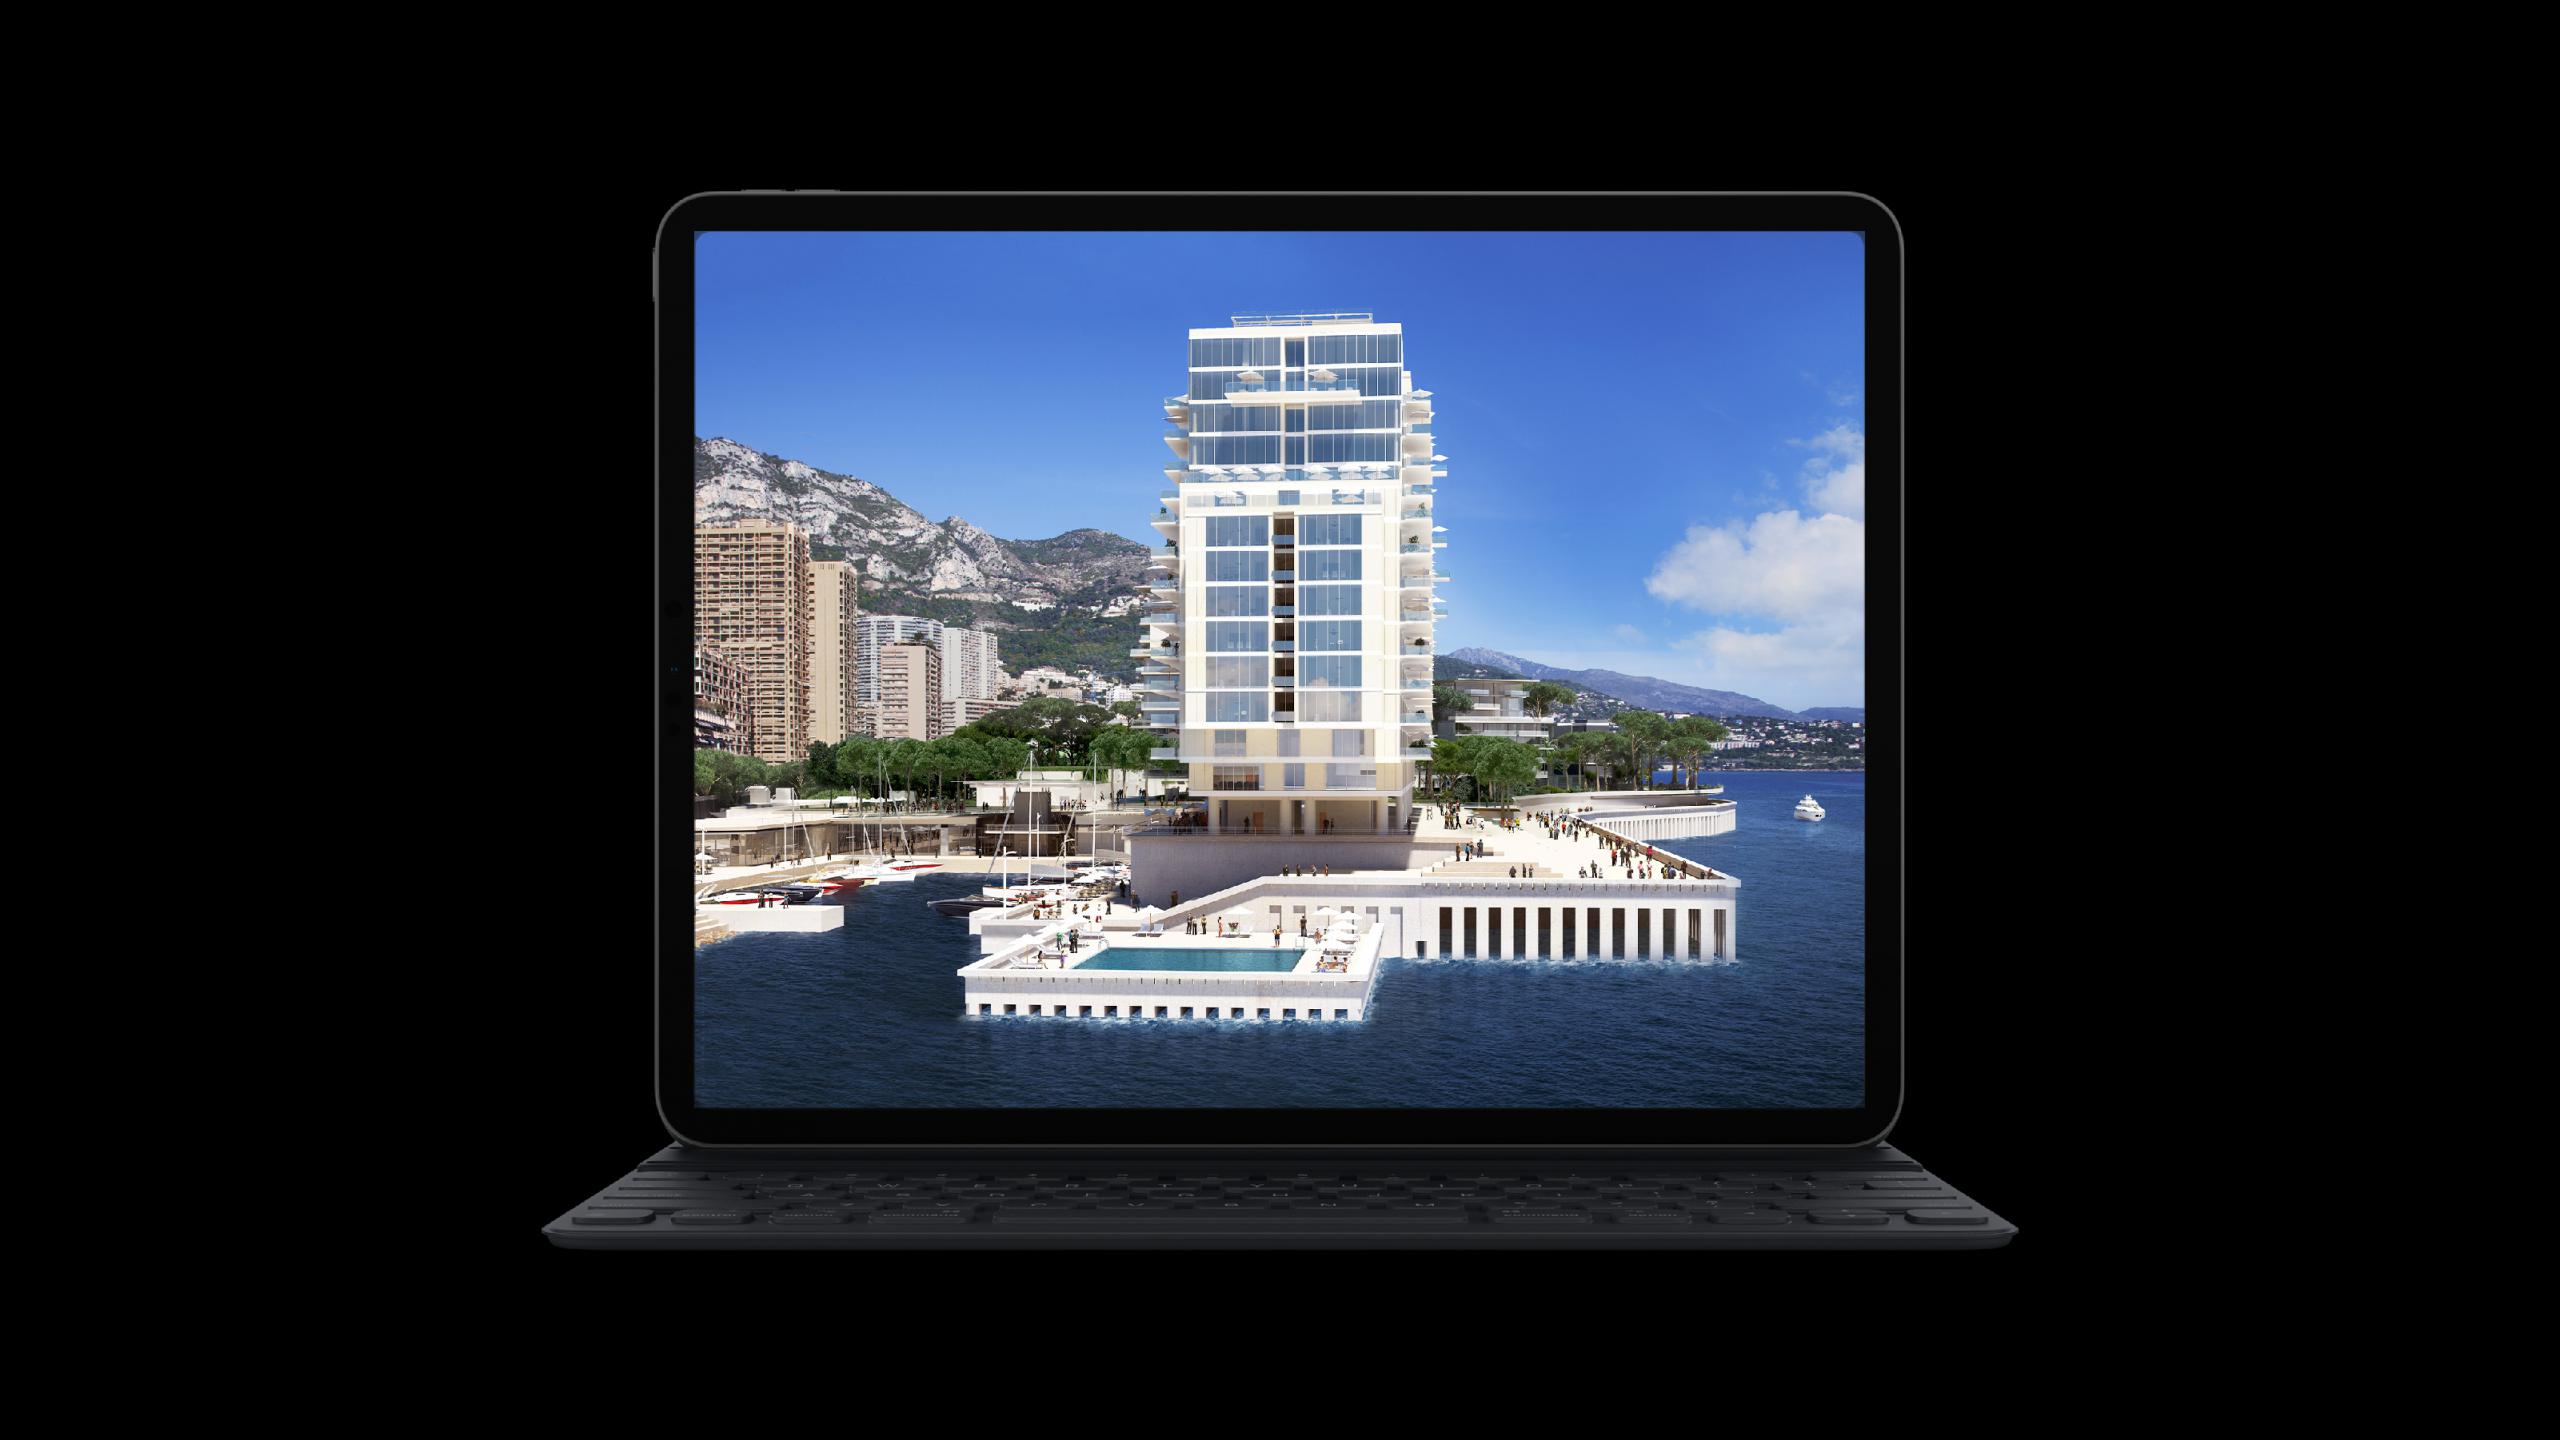 Immagini virtuali fotorealistiche di Extension en Mar a Montecarlo